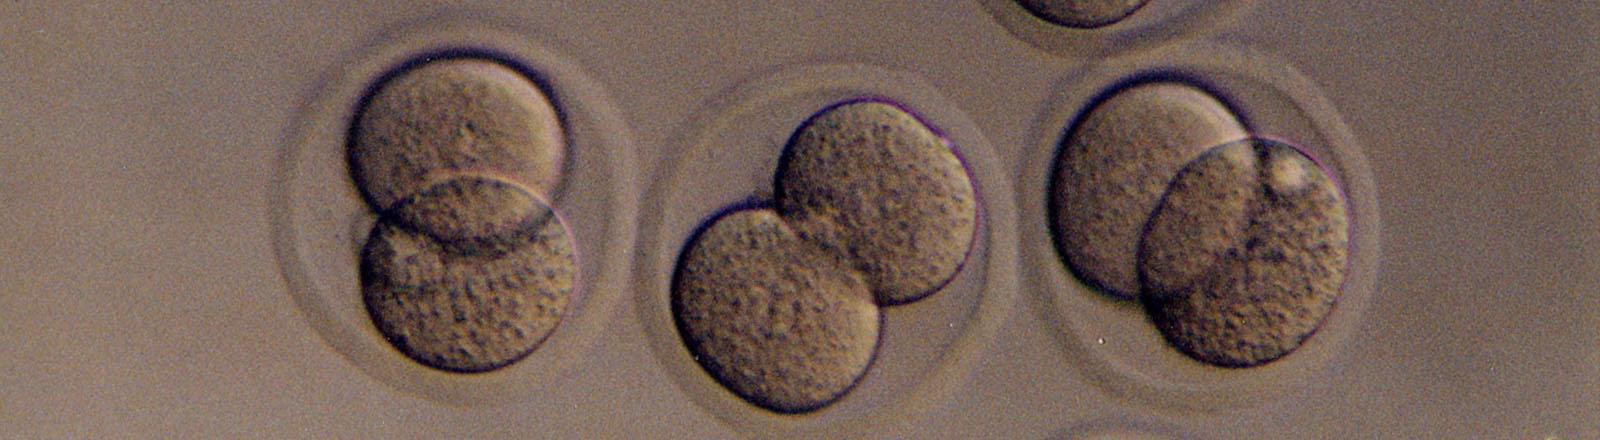 生物学胚胎图像